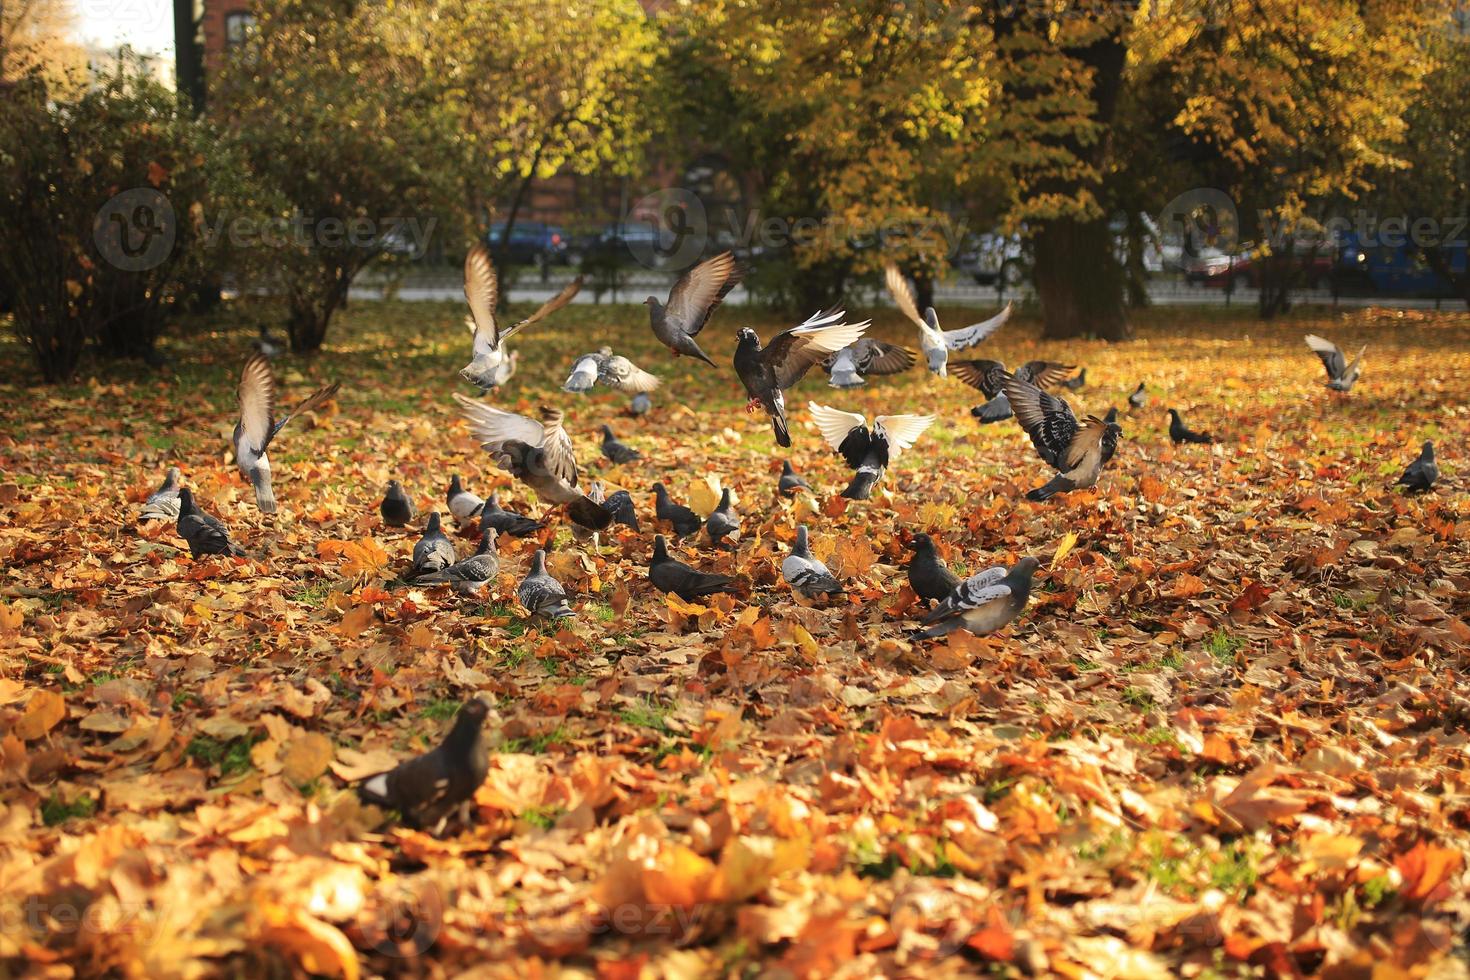 un grande stormo di piccioni decolla da terra in aria nel parco in autunno. volare piccioni selvatici, paesaggio primaverile foto